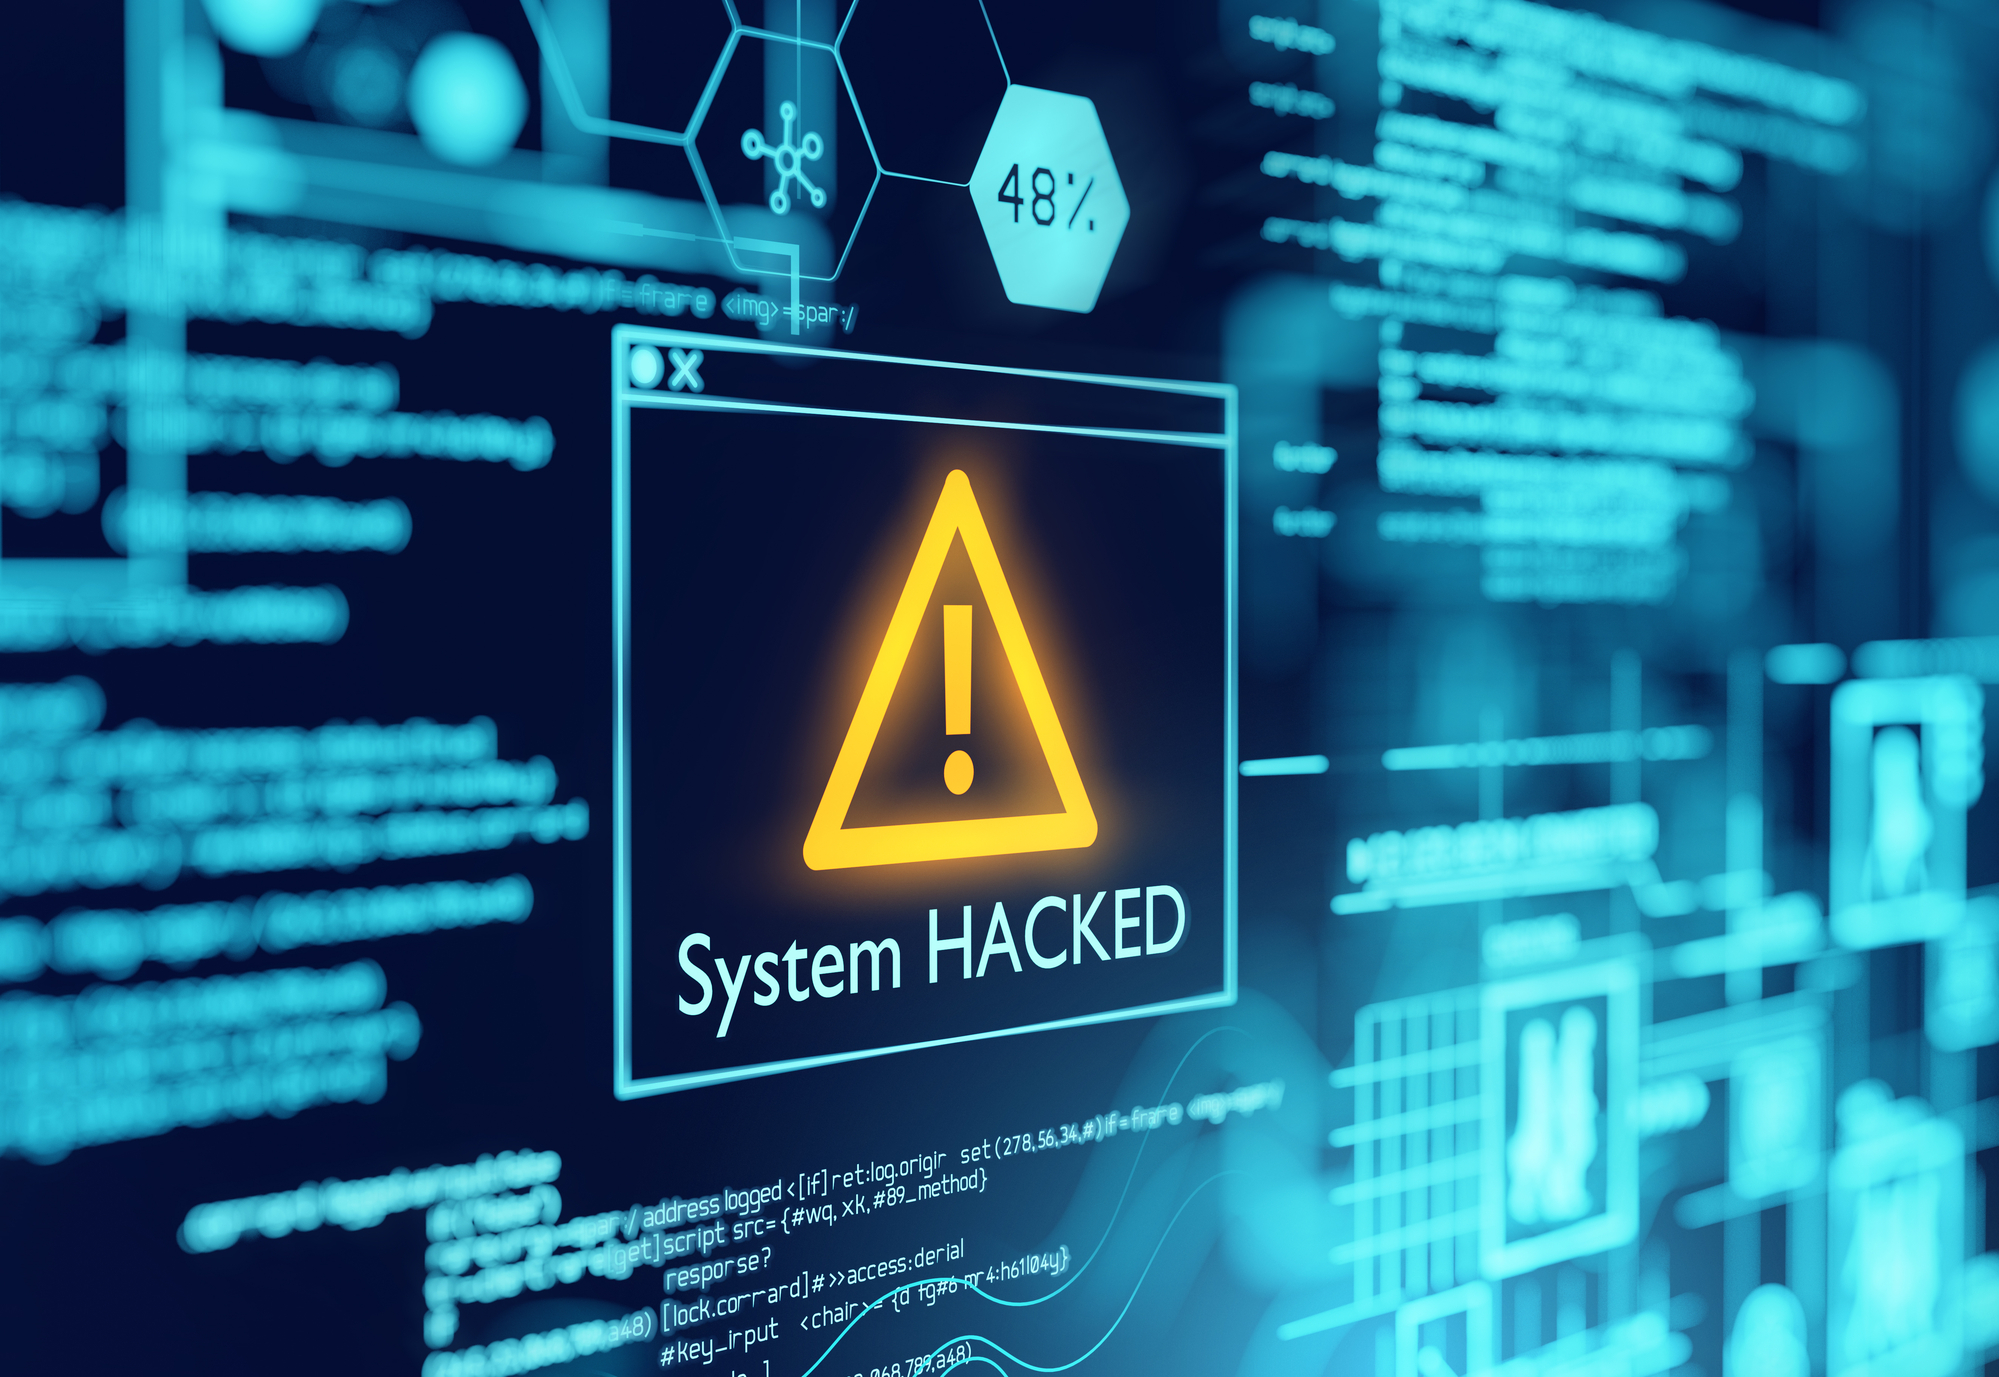 Sicurezza cyber settore energetico: attacchi raddoppiati in 4 anni